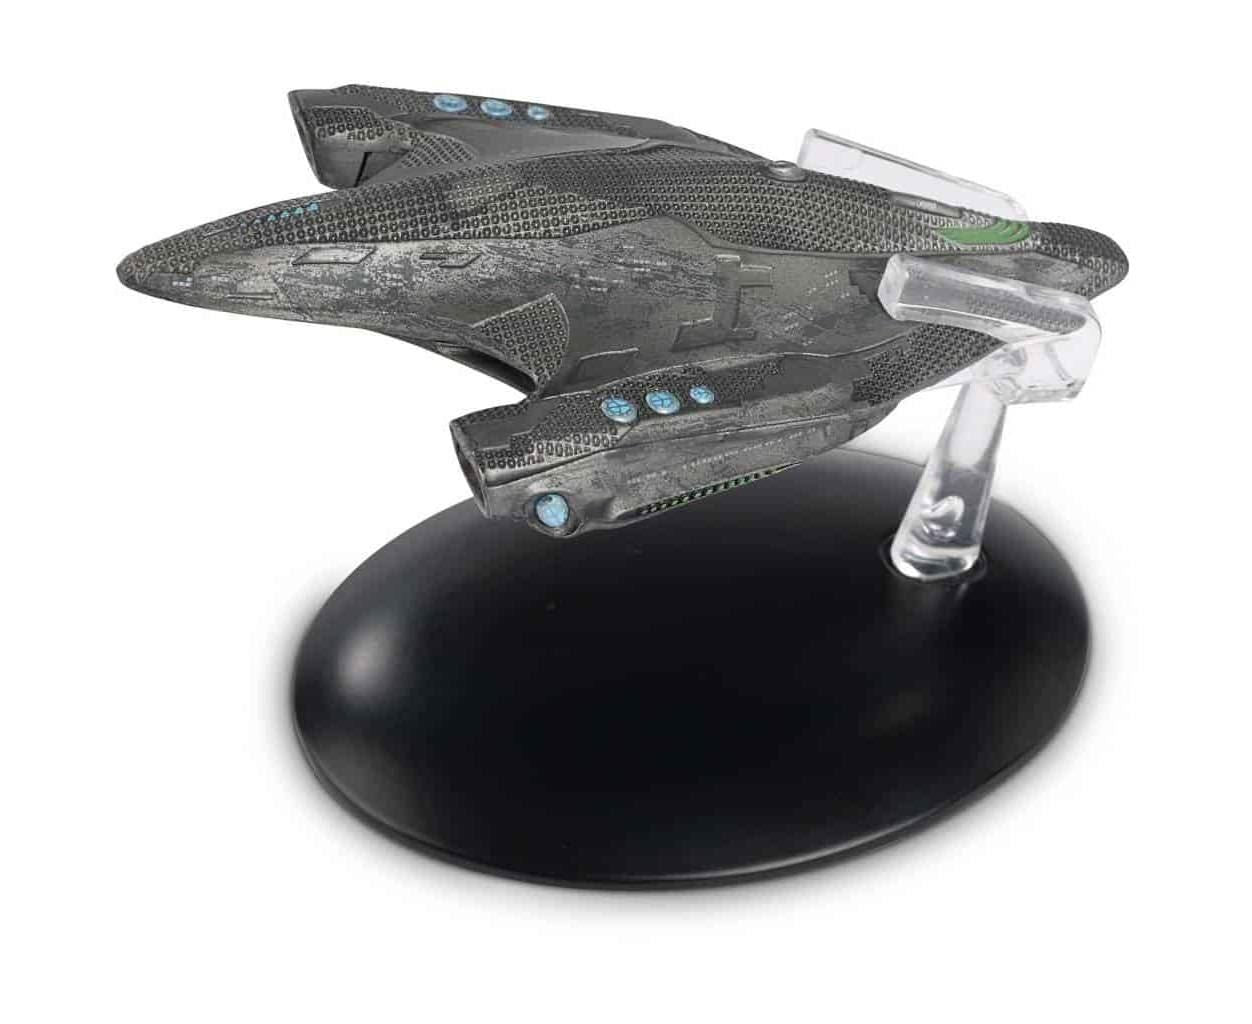 #153 Devore Warship Diecast Model Ship (Eaglemoss / Star Trek)